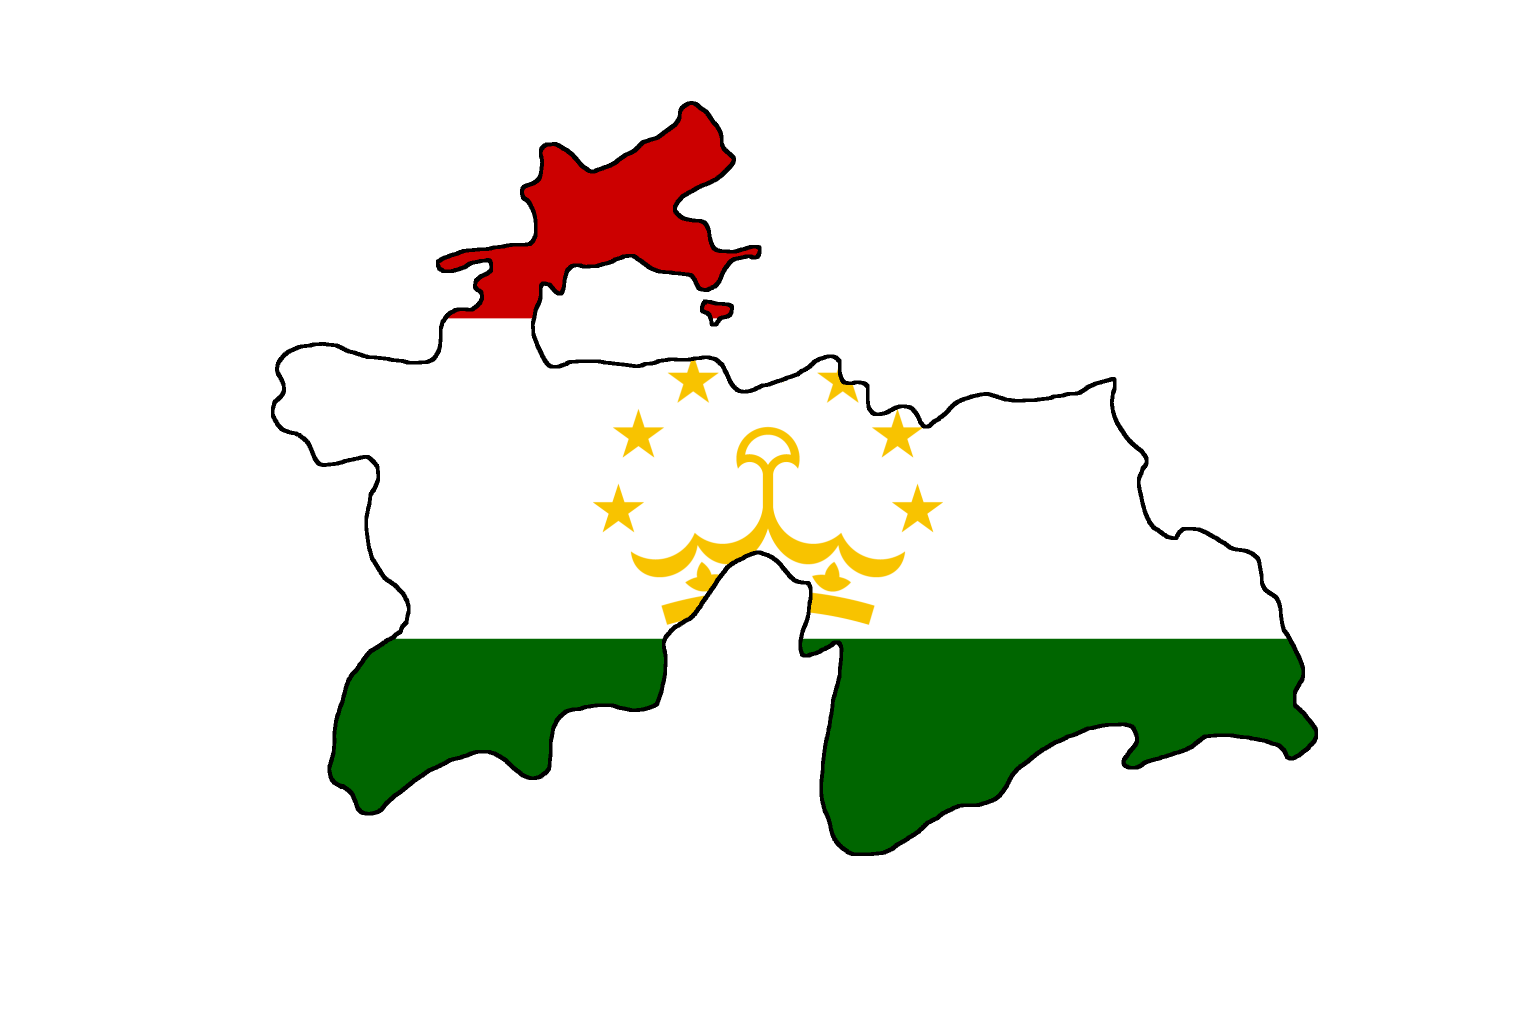 Карта Таджикистана вектор. Флагшток - национальный флаг Республики Таджикистан. Таджикистан карта флаг. Территория Таджикистана с флагом. Таджикская территория